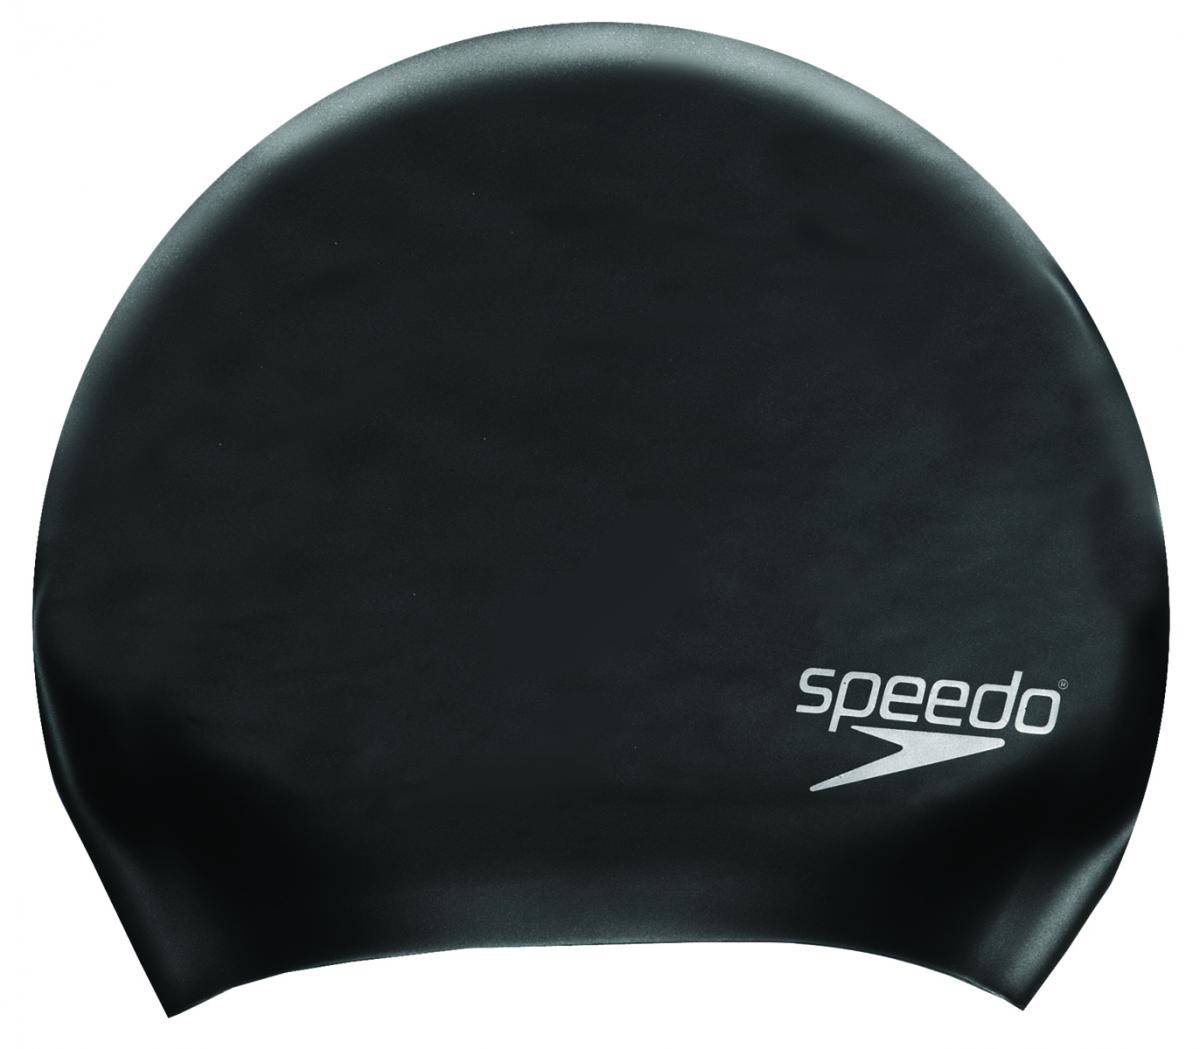 Speedo long hair silicon cap